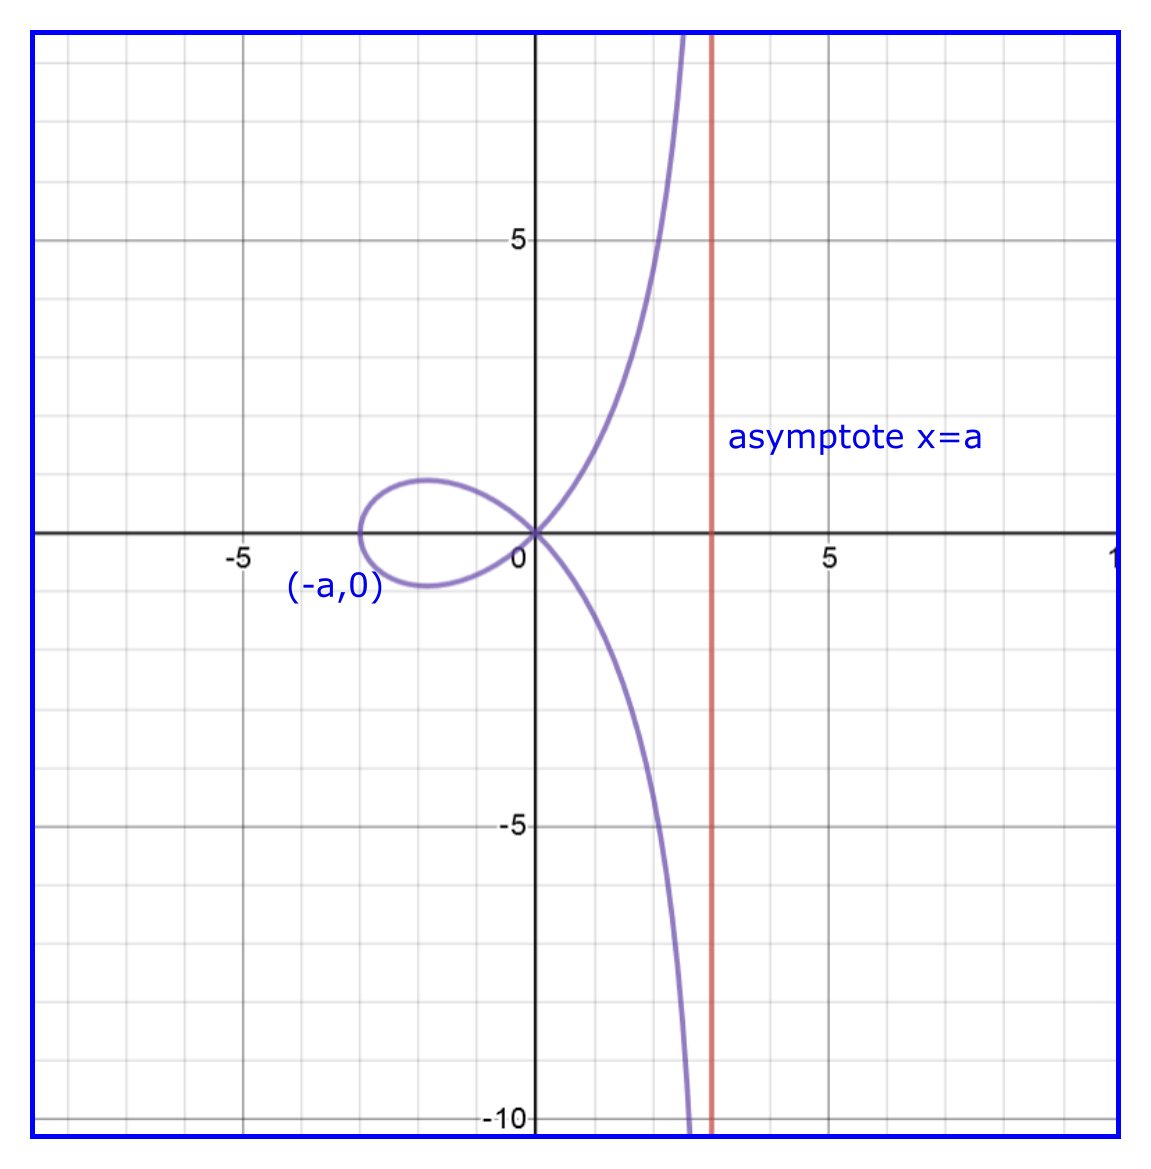 $y^2(a-x)=x^2(a+x)$